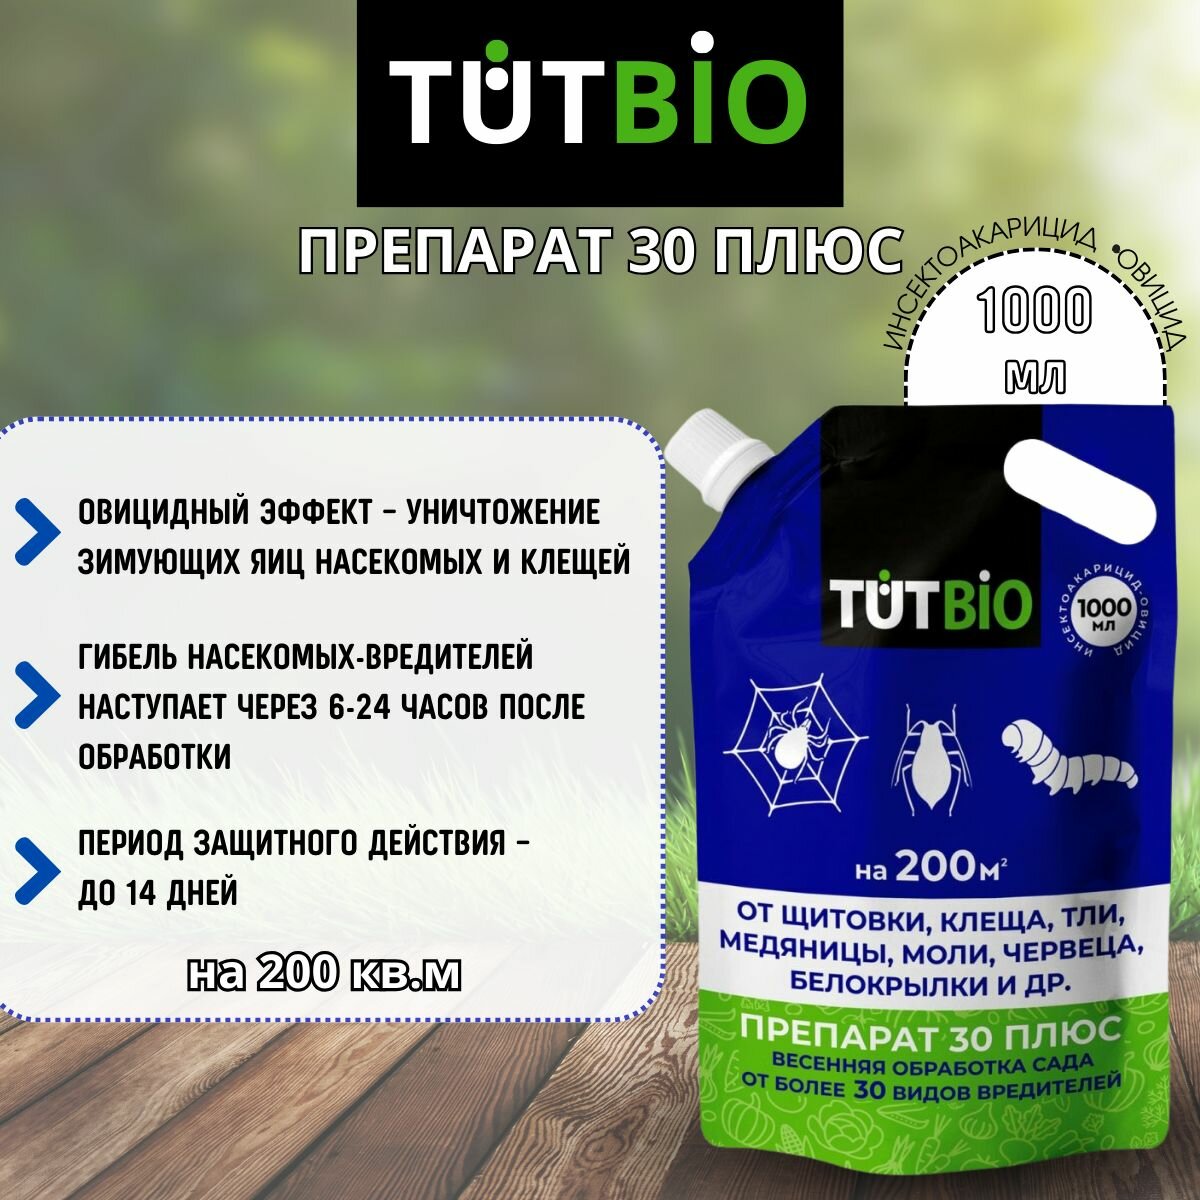 ТУТ БИО (TUTBIO) Препарат 30 плюс ММЭ пестицид от зимующих вредителей 1000 мл